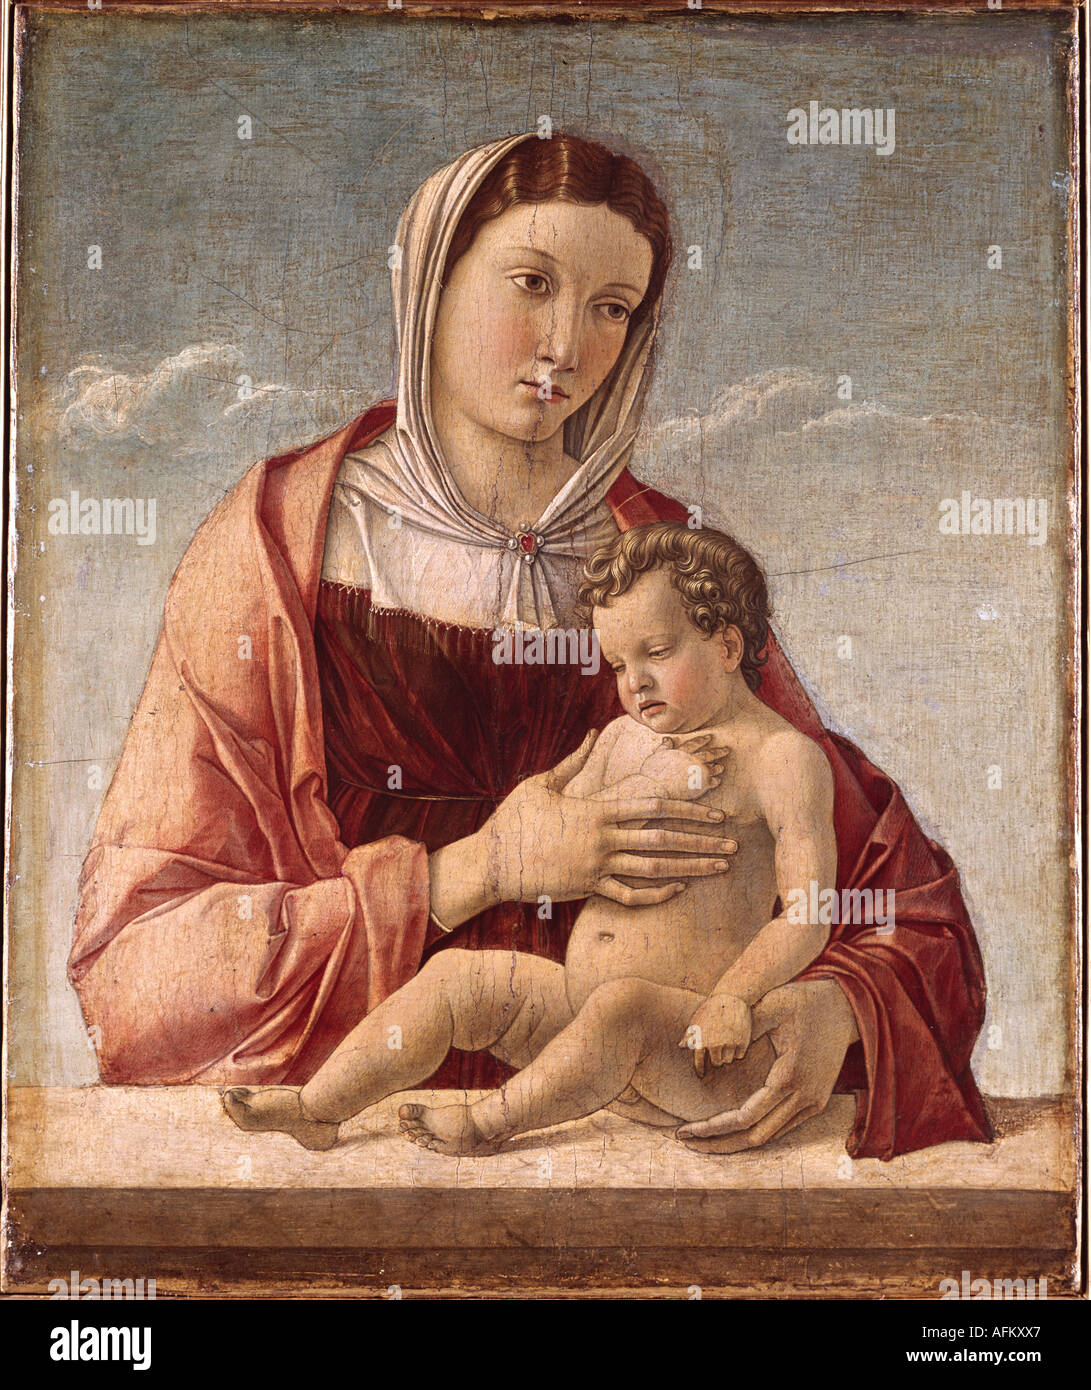 'Fine Arts, Bellini, Giovanni, (vers 1426 - 1516), peinture, 'Madonna avec enfant', 1460 - 1464, huile sur toile, 52 cm x 42,5 c Banque D'Images